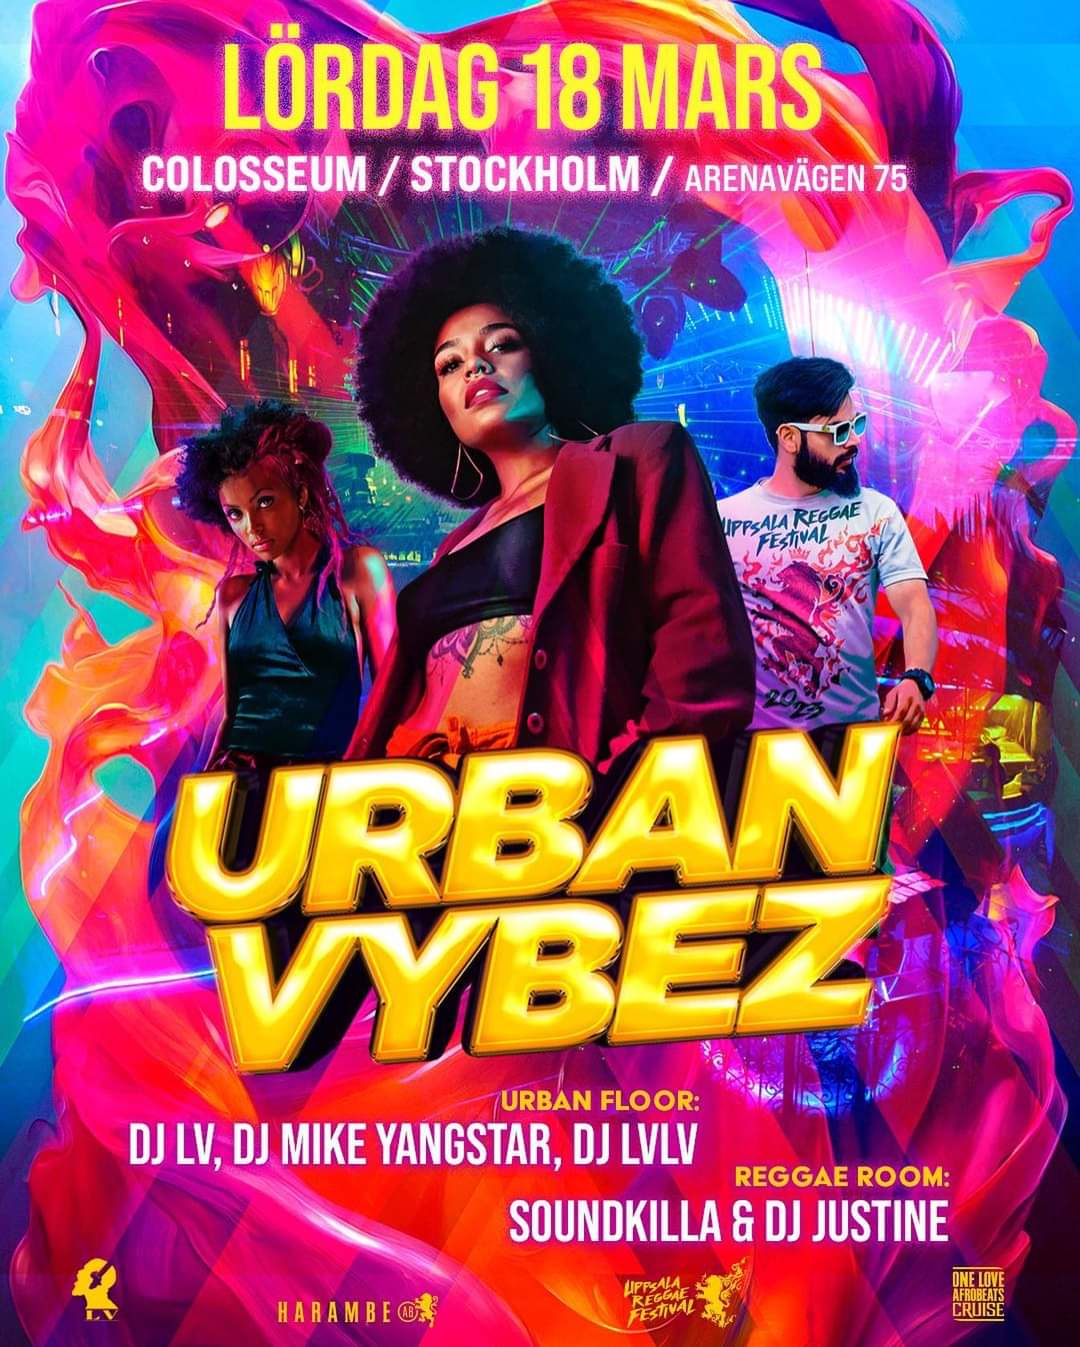 KLUBB! Urban Vybez! (STOCKHOLM)